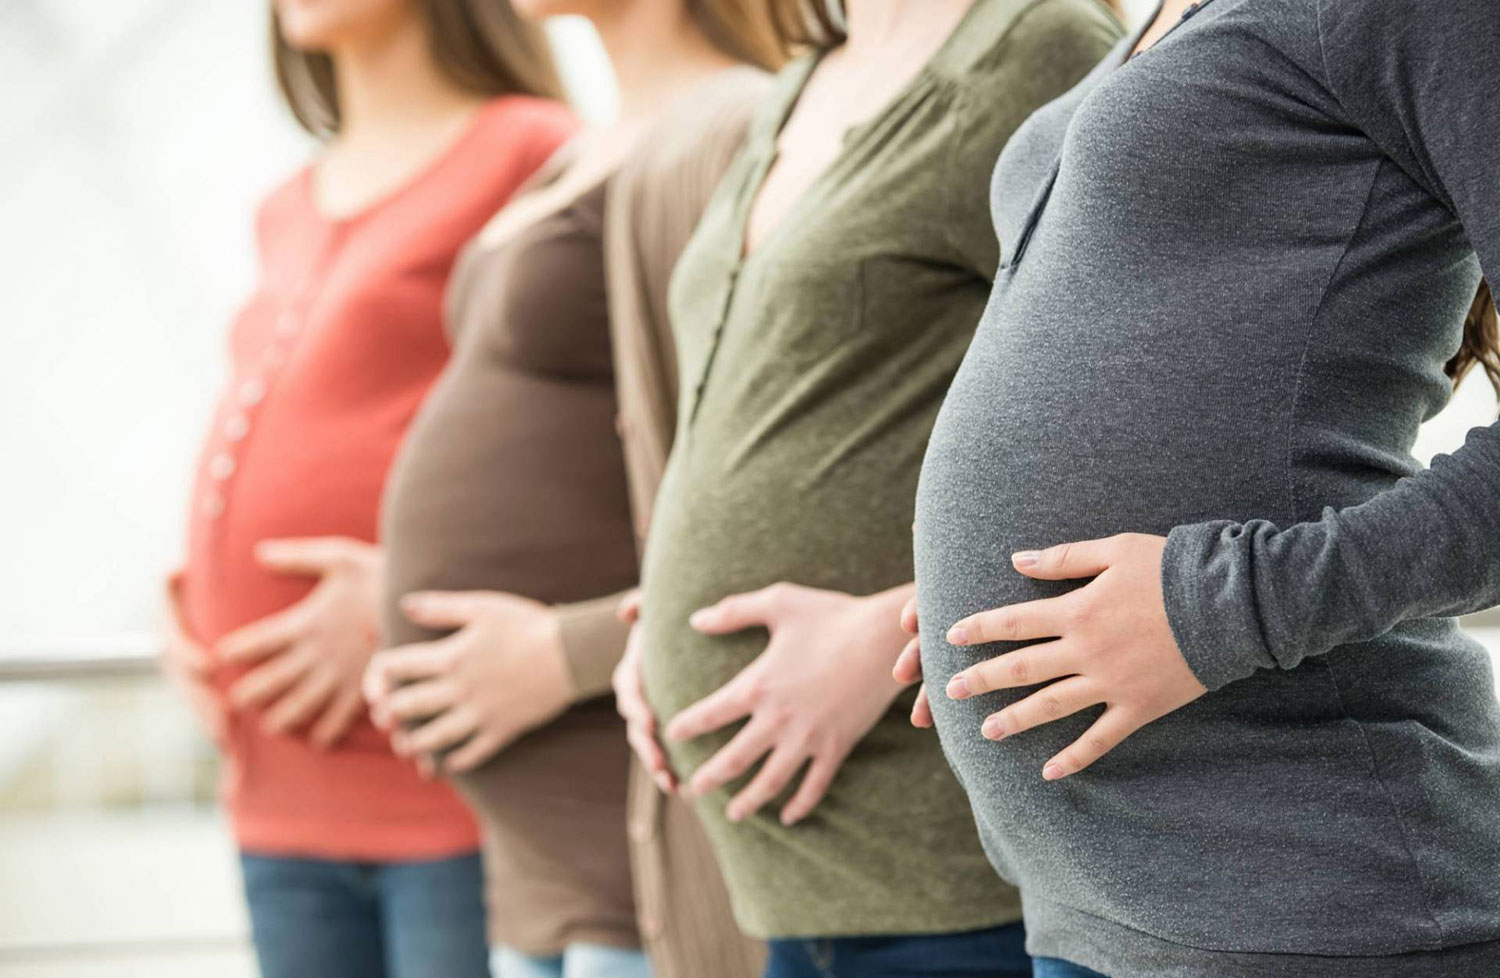 فهرست کامل آزمایش های دوران بارداری